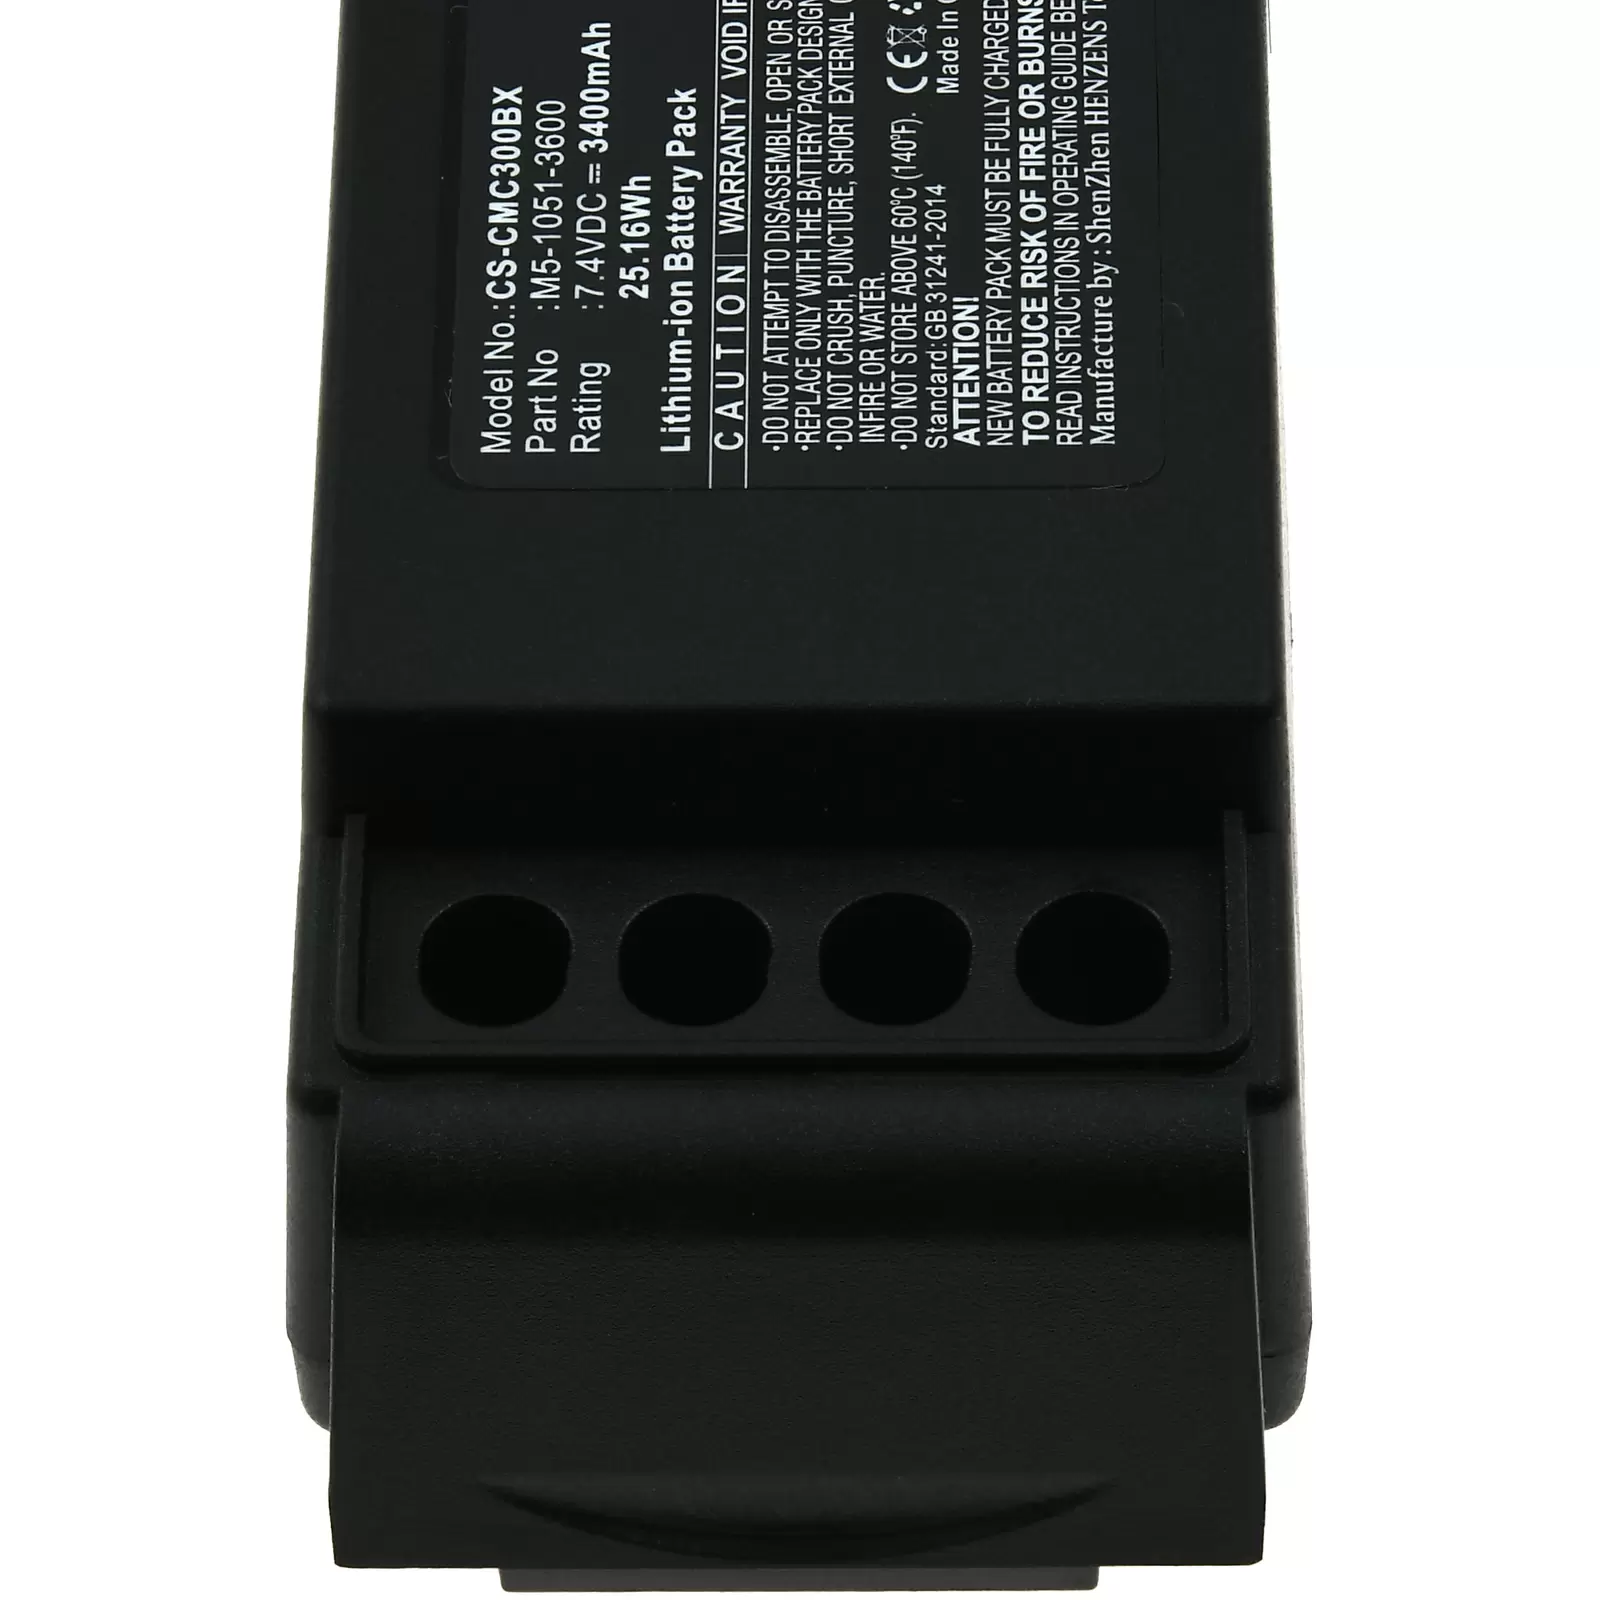 Powerakku für Kran-Funkfernsteuerung Cavotec MC-3000 / MC-3 / Typ M5-1051-3600